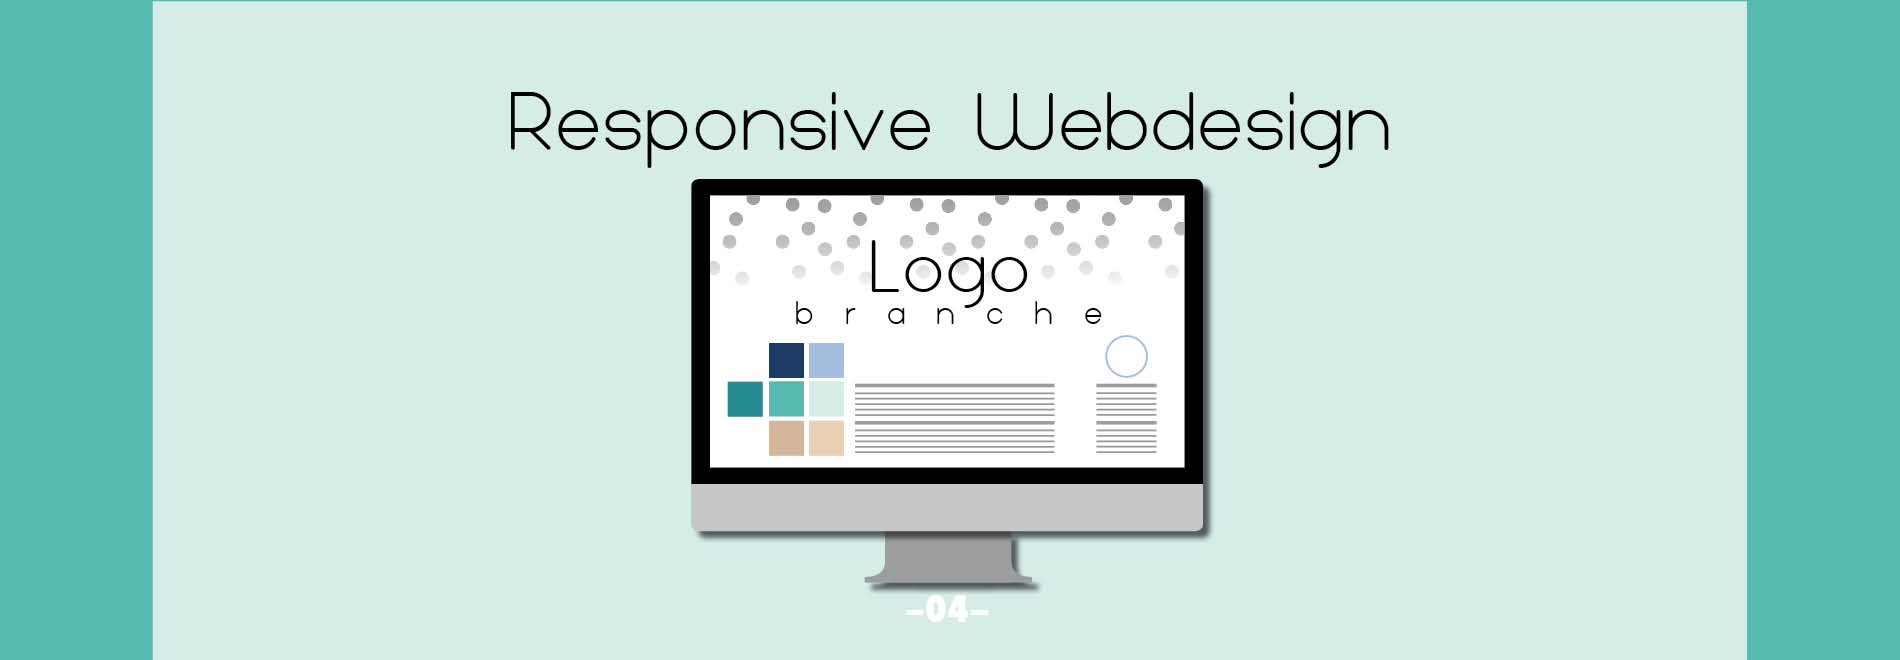 014_Responsive_Webdesign.jpg